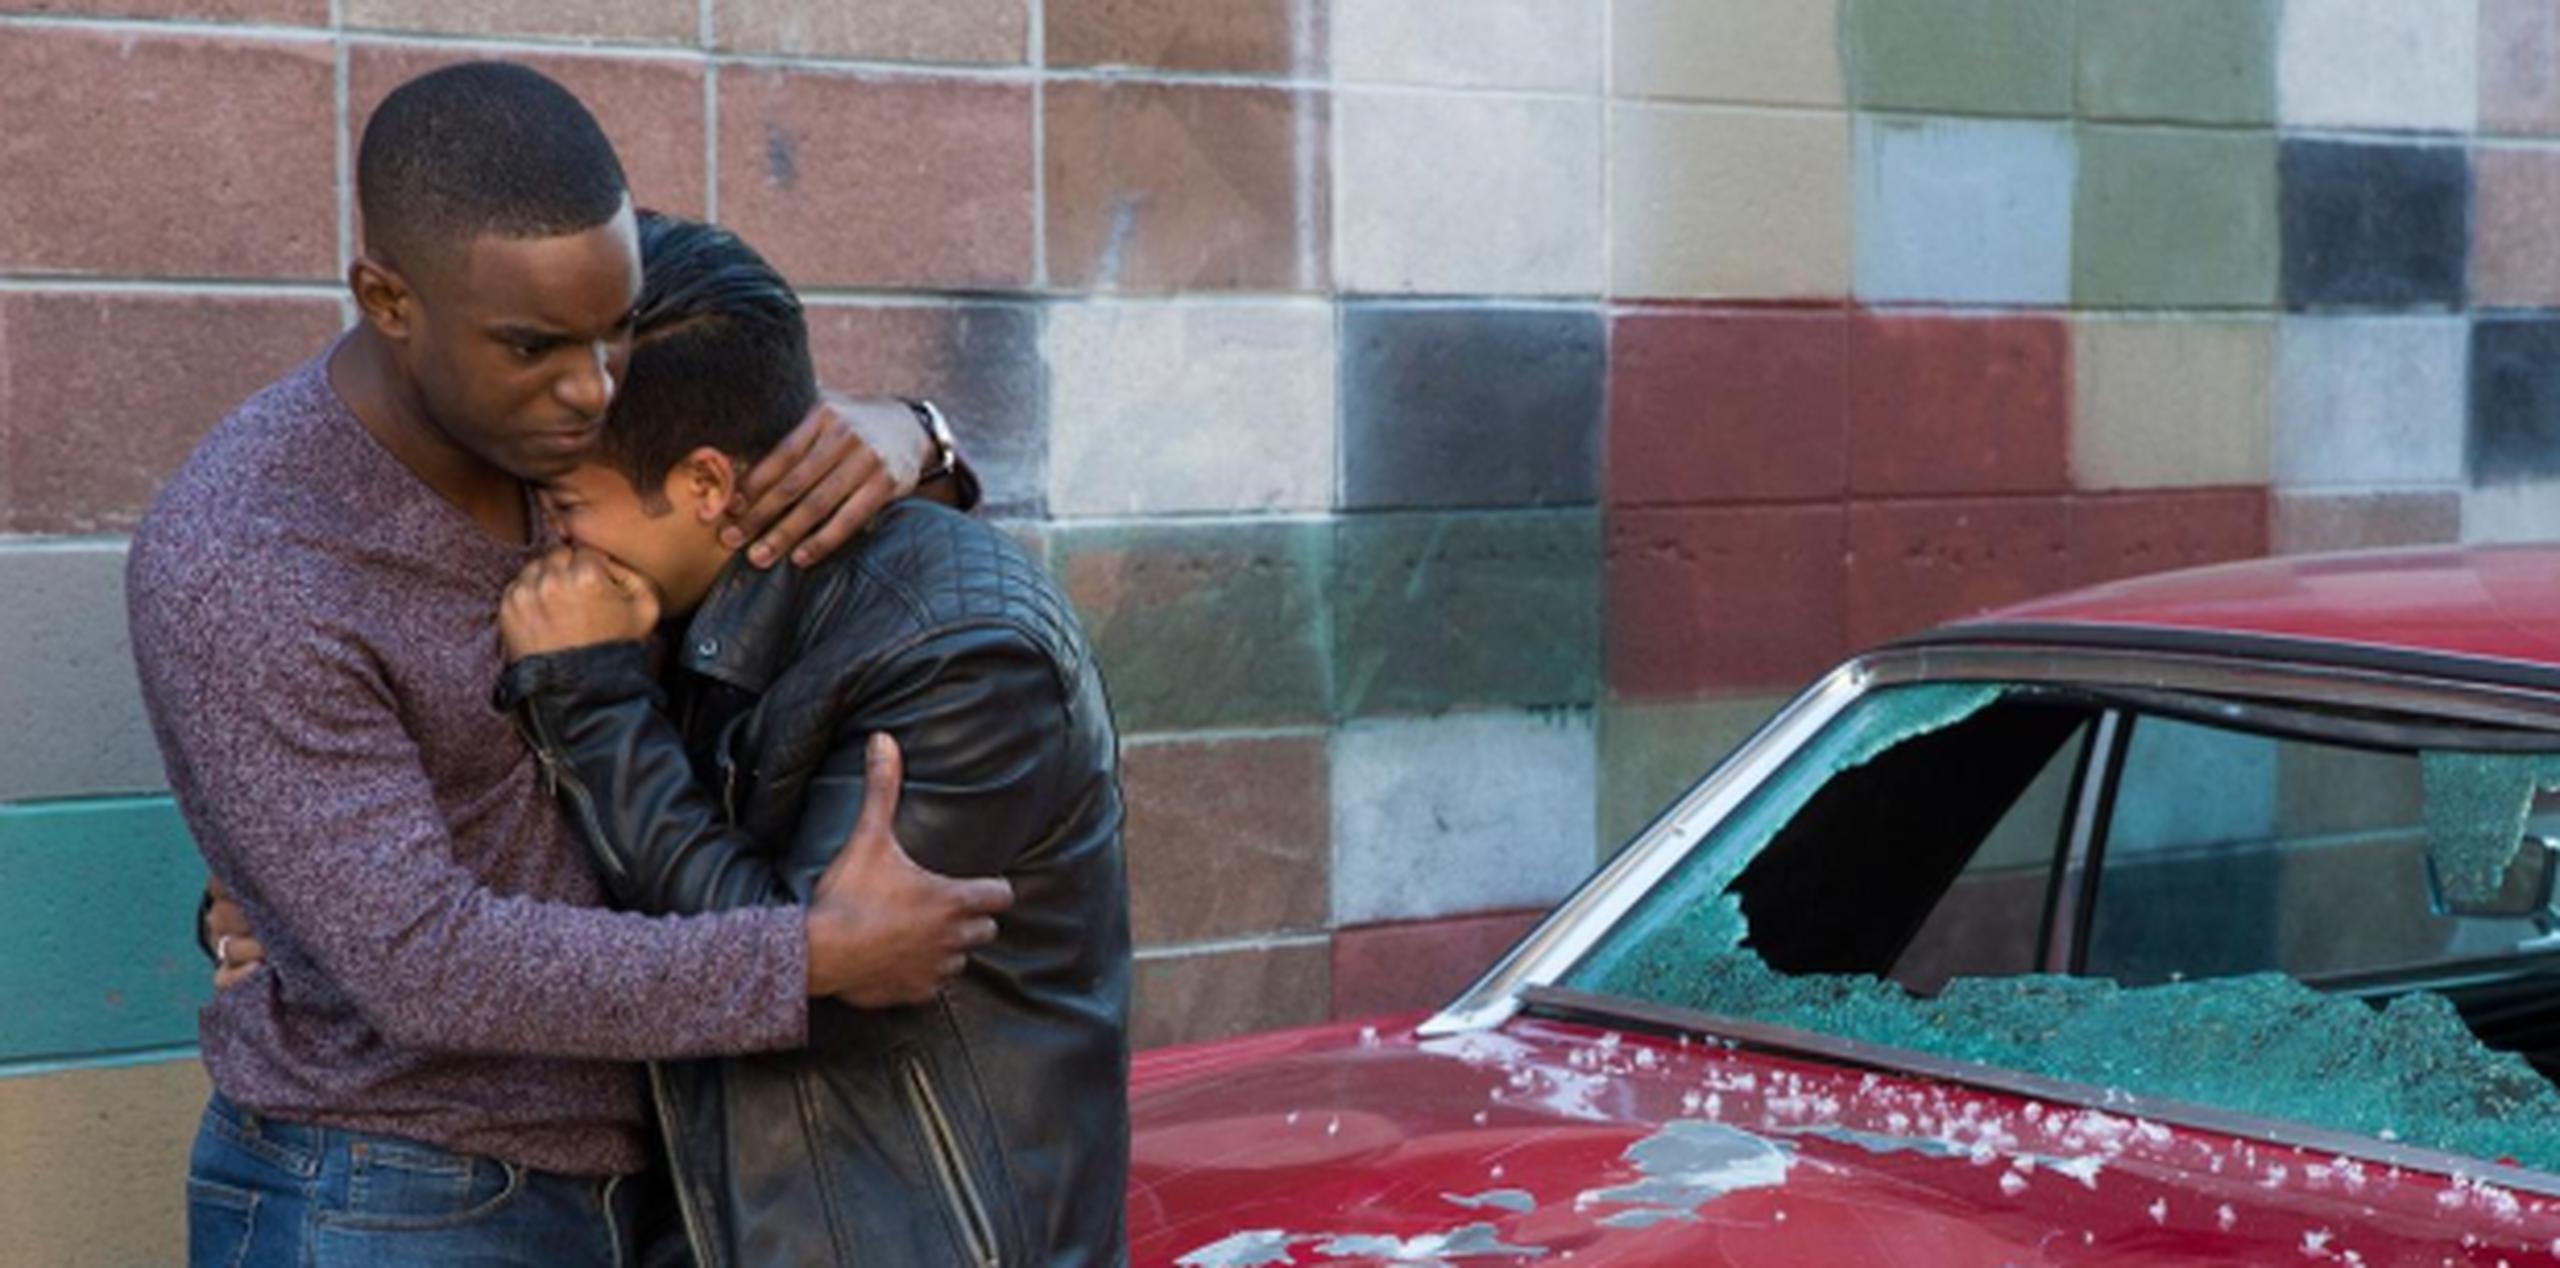 "13 Reasons Why". Tony Padilla (Christian Navarro) llora por alguna razón desconocida. No obstante, que el parabrisas posterior de su vehículo esté roto podría estar relacionado a su pesar. (Foto: Netflix)